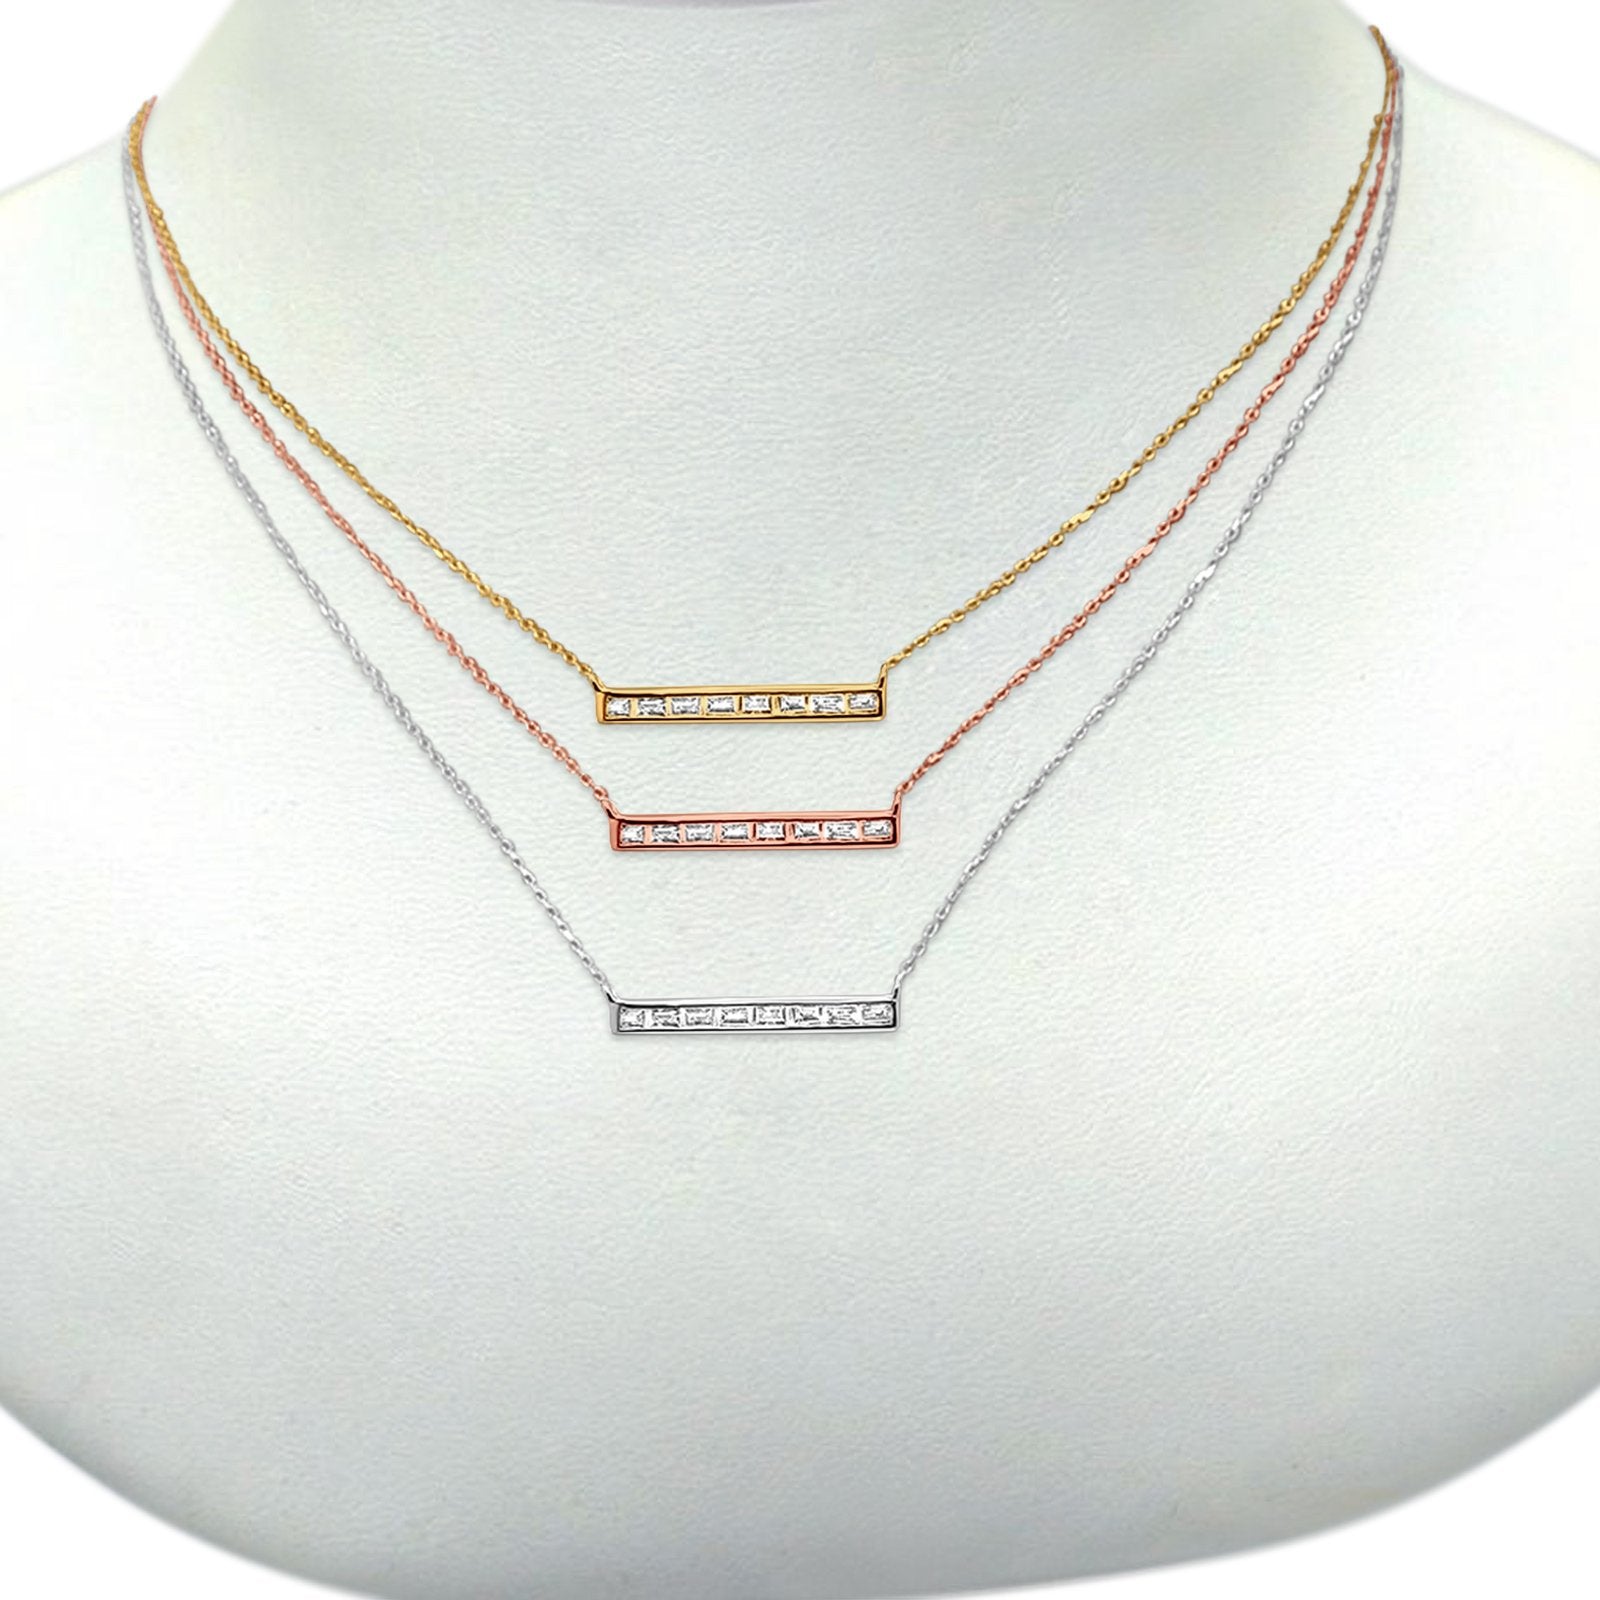 14K Gold Baguette Diamond Trendy Bar .15ct Pendant Necklace 16"+2"